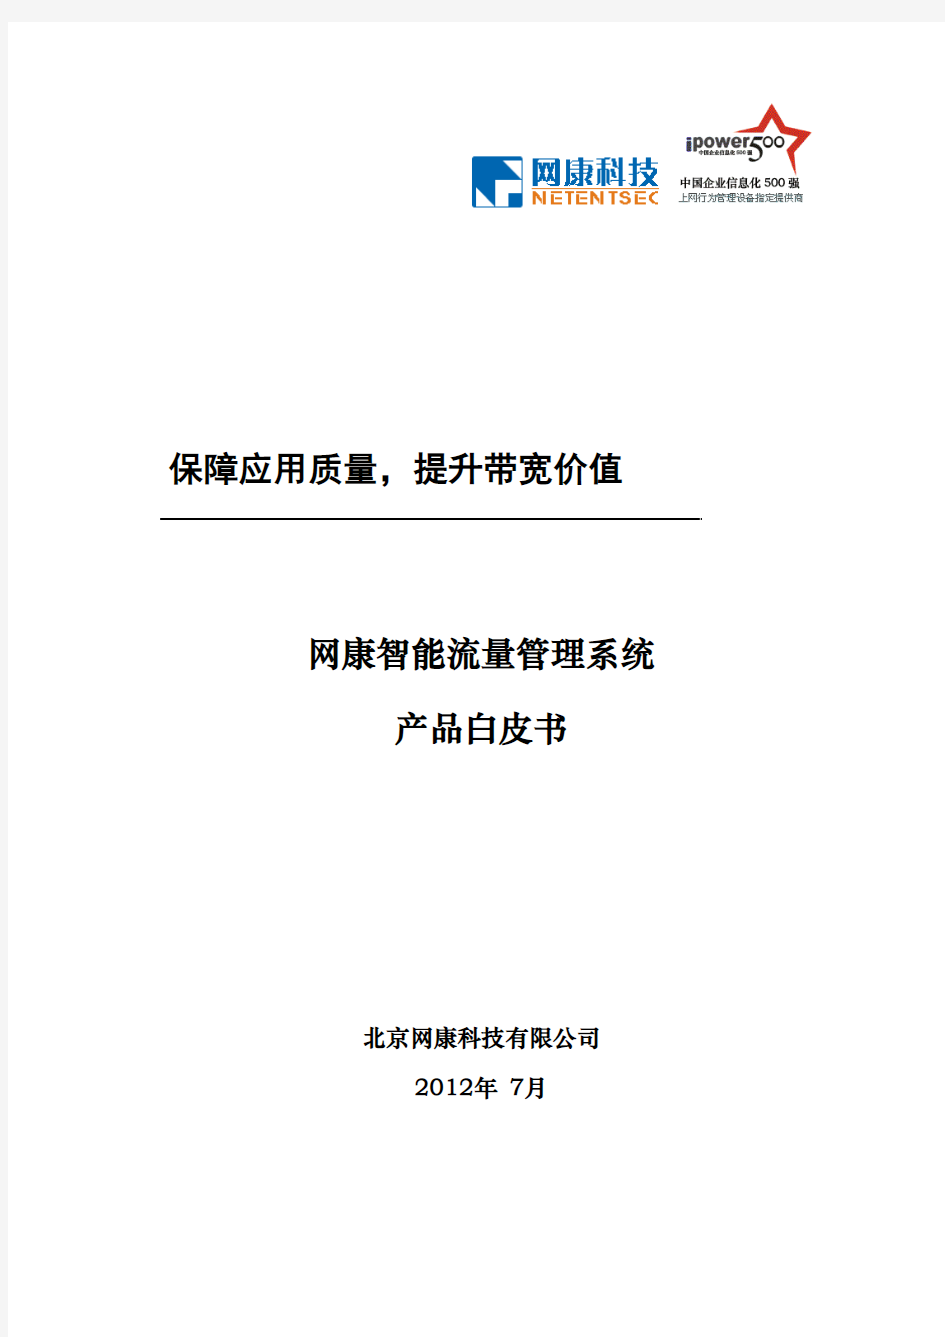 网康智能流量管理系统5.0技术白皮书-201207